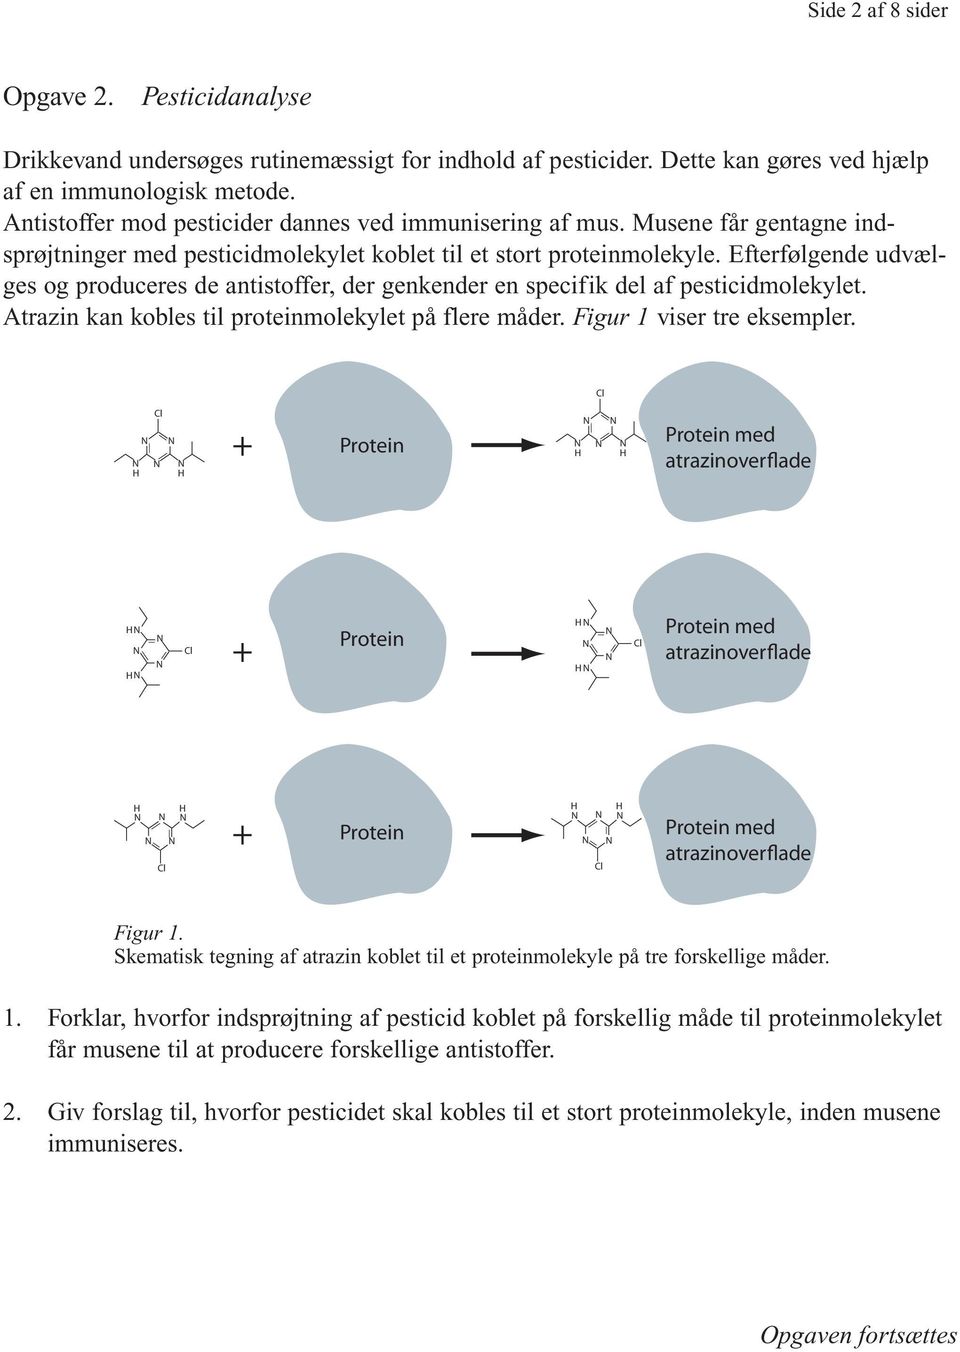 Efterfølgende udvælges og produceres de antistoffer, der genkender en specifik del af pesticidmolekylet. Atrazin kan kobles til proteinmolekylet på flere måder. Figur 1 viser tre eksempler.